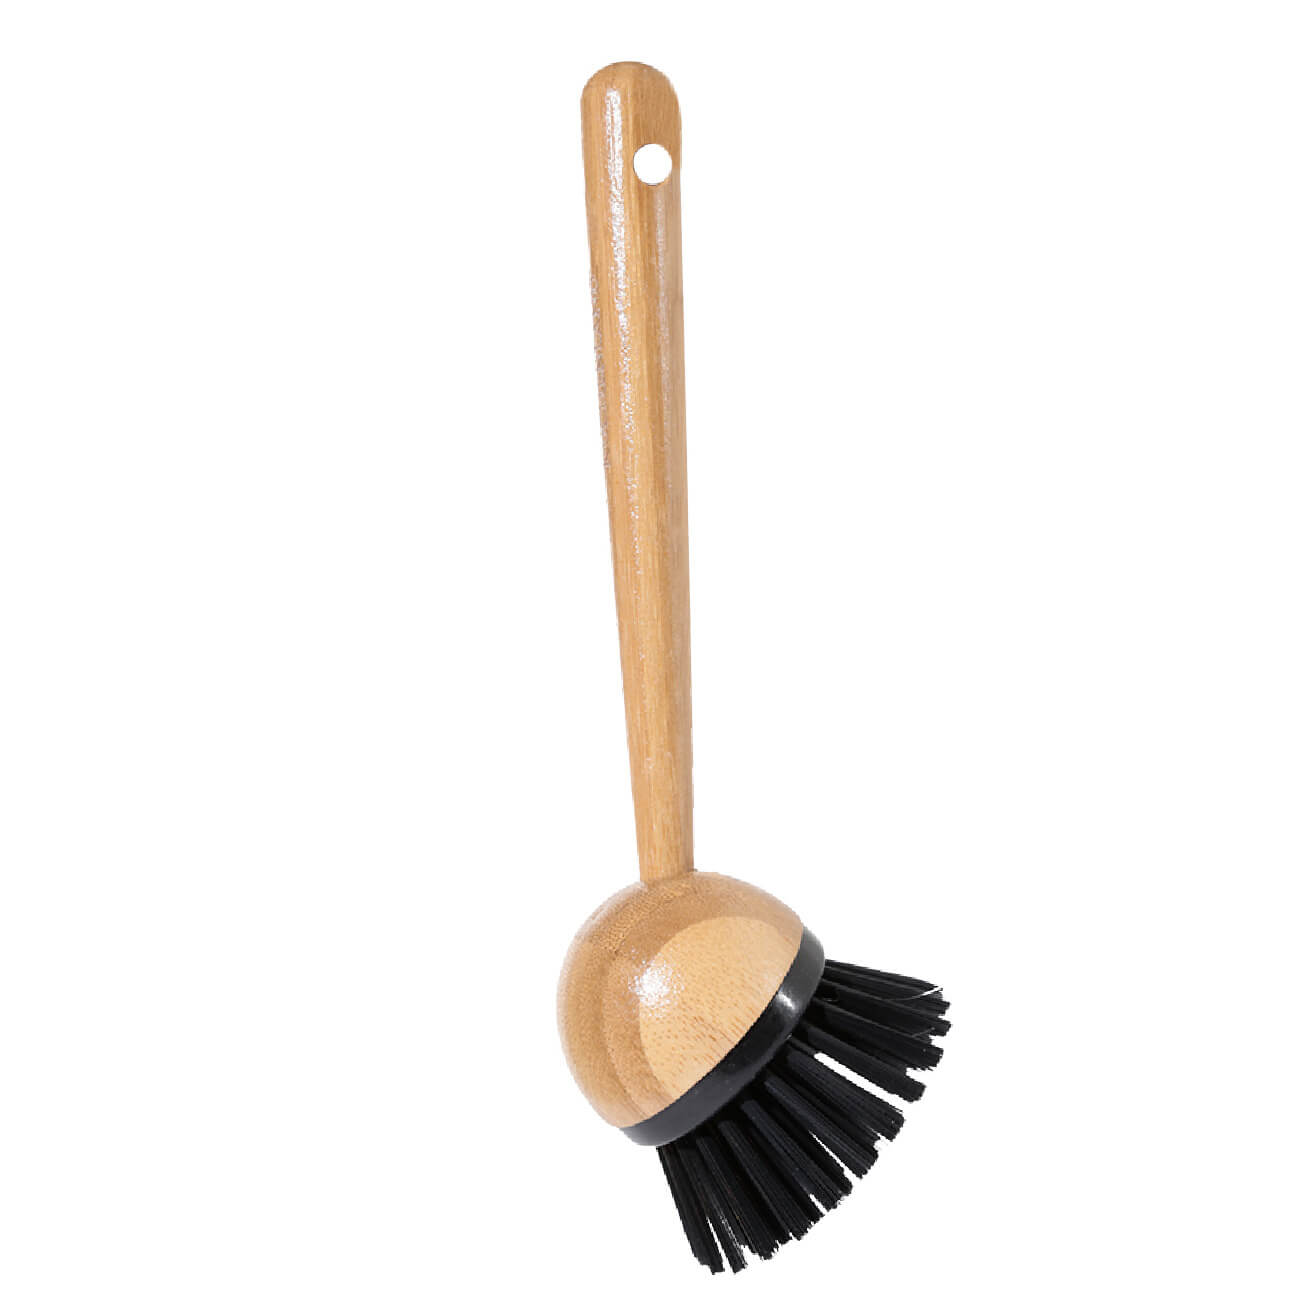 Щетка для уборки, 21 см, пластик/бамбук, черная, Black clean черная зубная щетка colgate бамбук древесный уголь мягкая